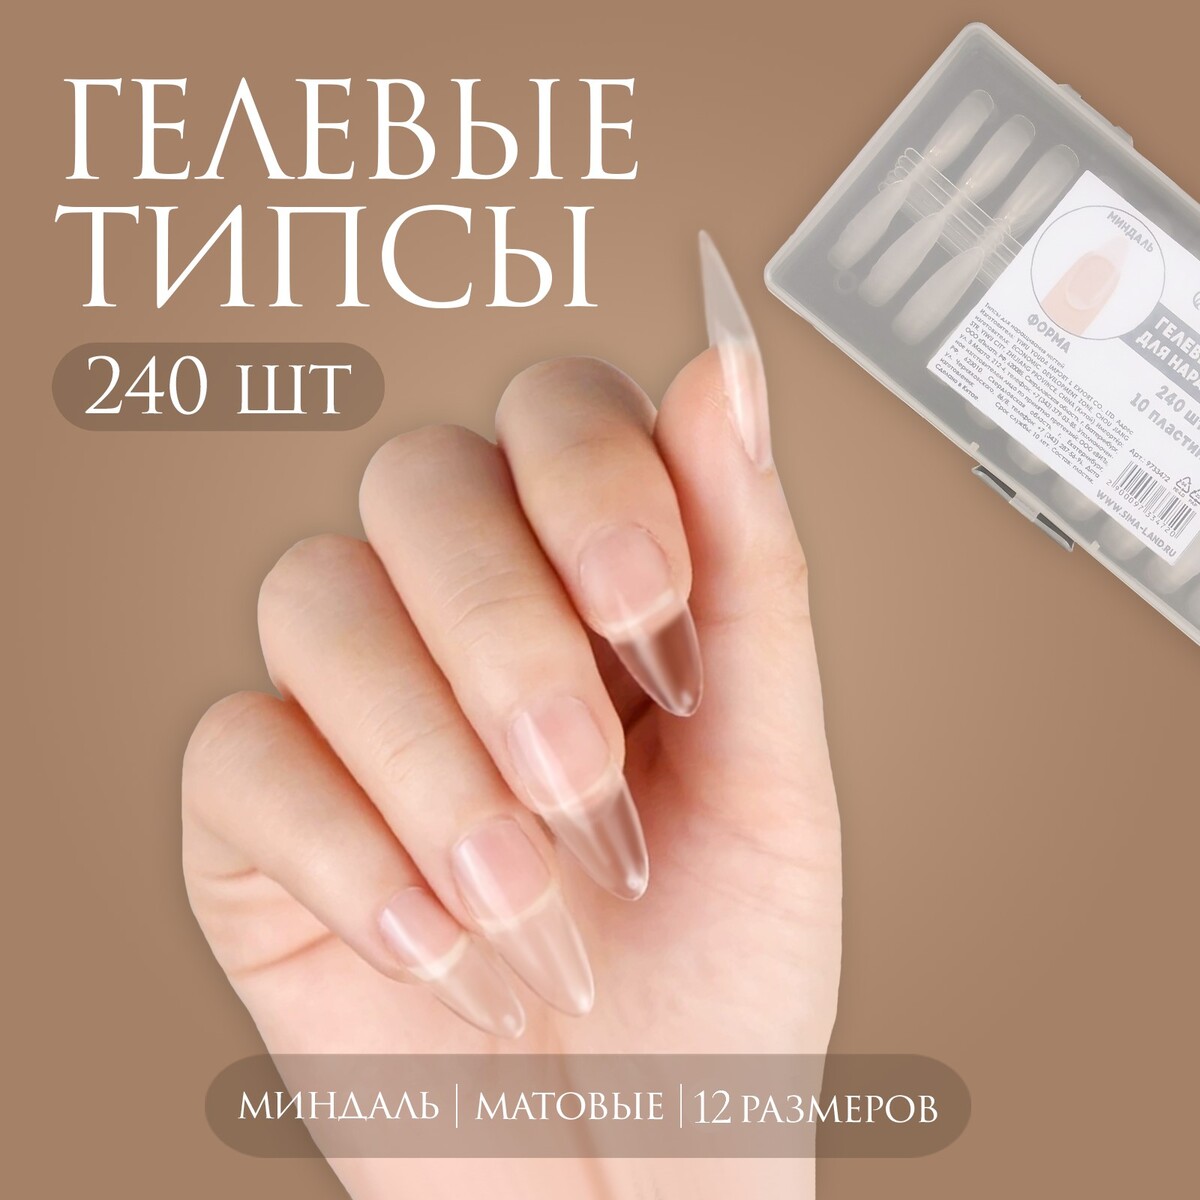 Гелевые типсы для наращивания ногтей, 240 шт, форма миндаль, полное матовое покрытие, цвет прозрачный